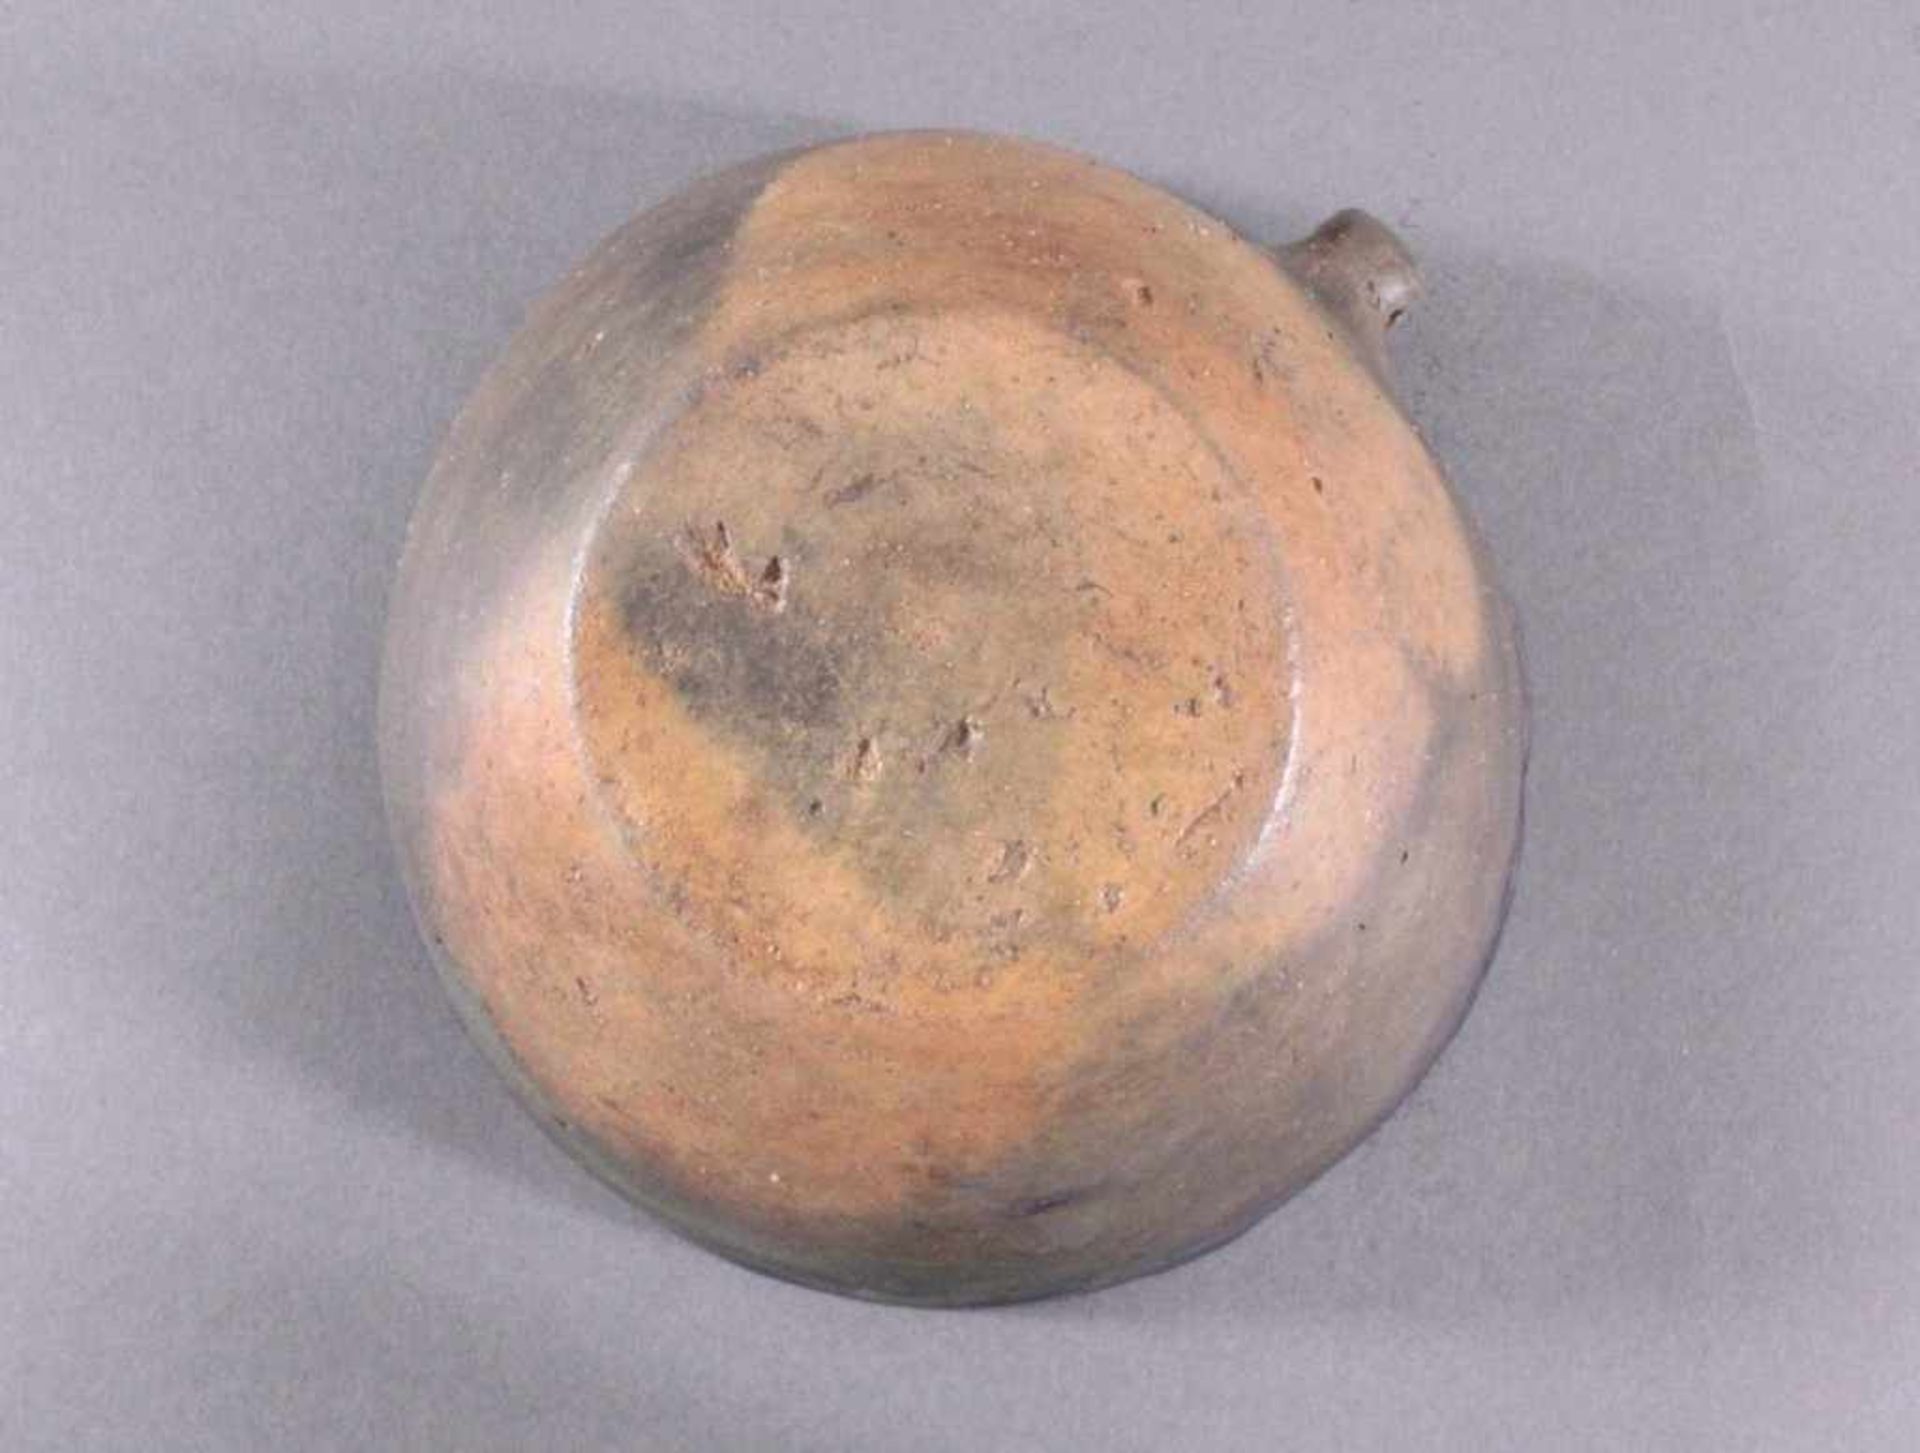 Henkelgefäß - Lausitzer Kultur 900-500 v. Chr.Tassenförmiges Einhenkelgefäß, aus dunkelbraunem Ton, - Bild 5 aus 5